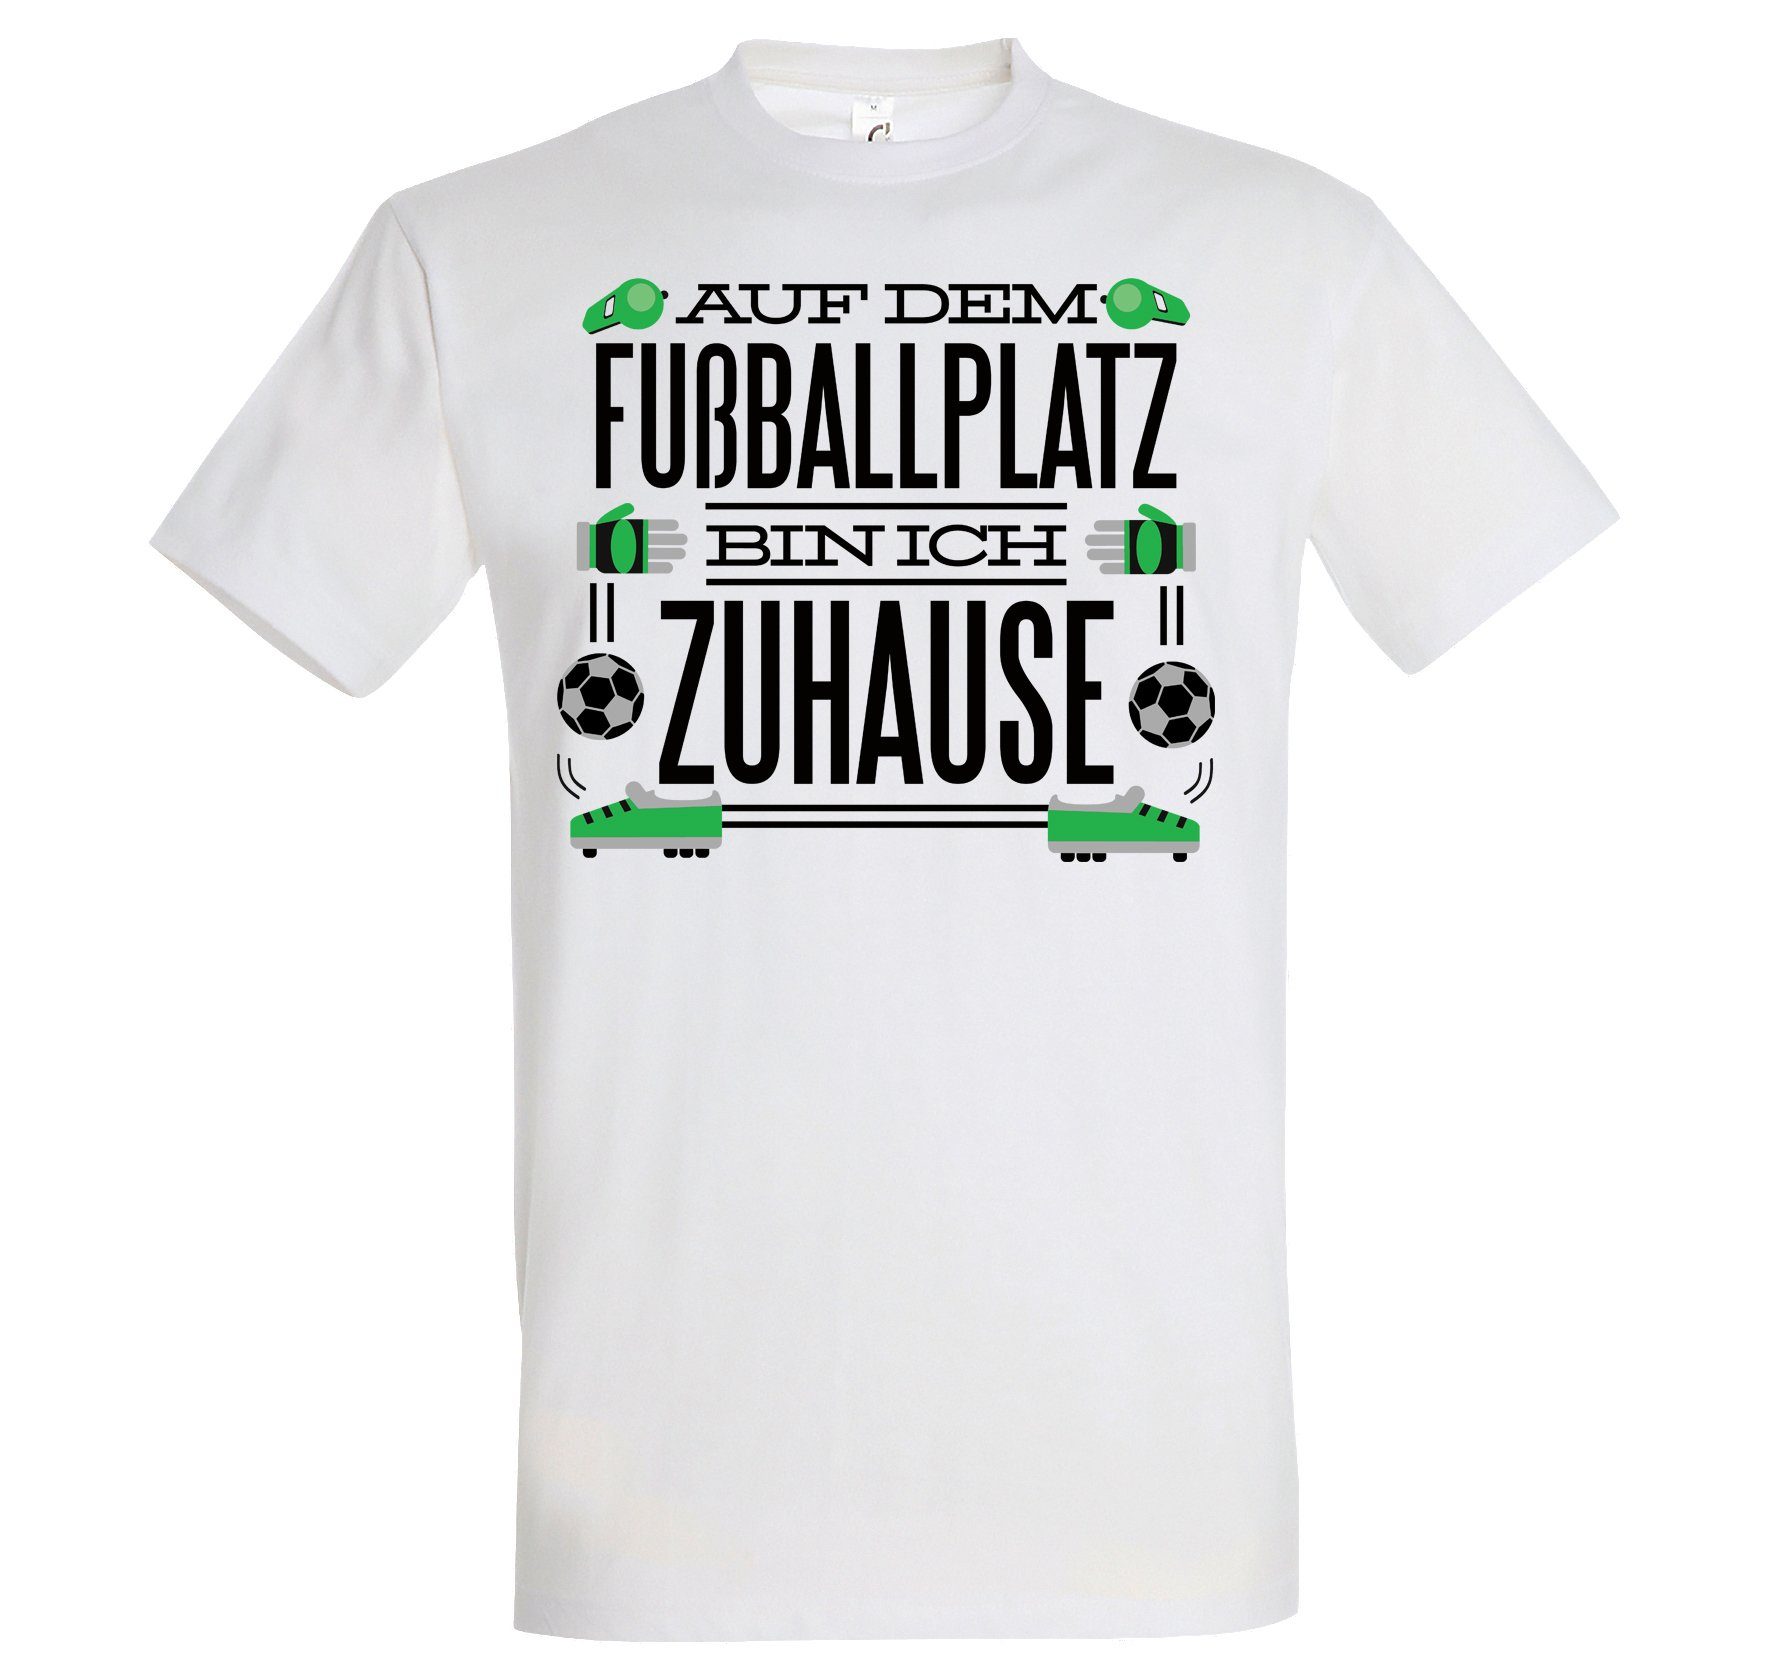 Youth Designz T-Shirt "Auf dem Fußballplatz bin ich Zuhause" Herren T-Shirt mit lustigem Spruch Weiß